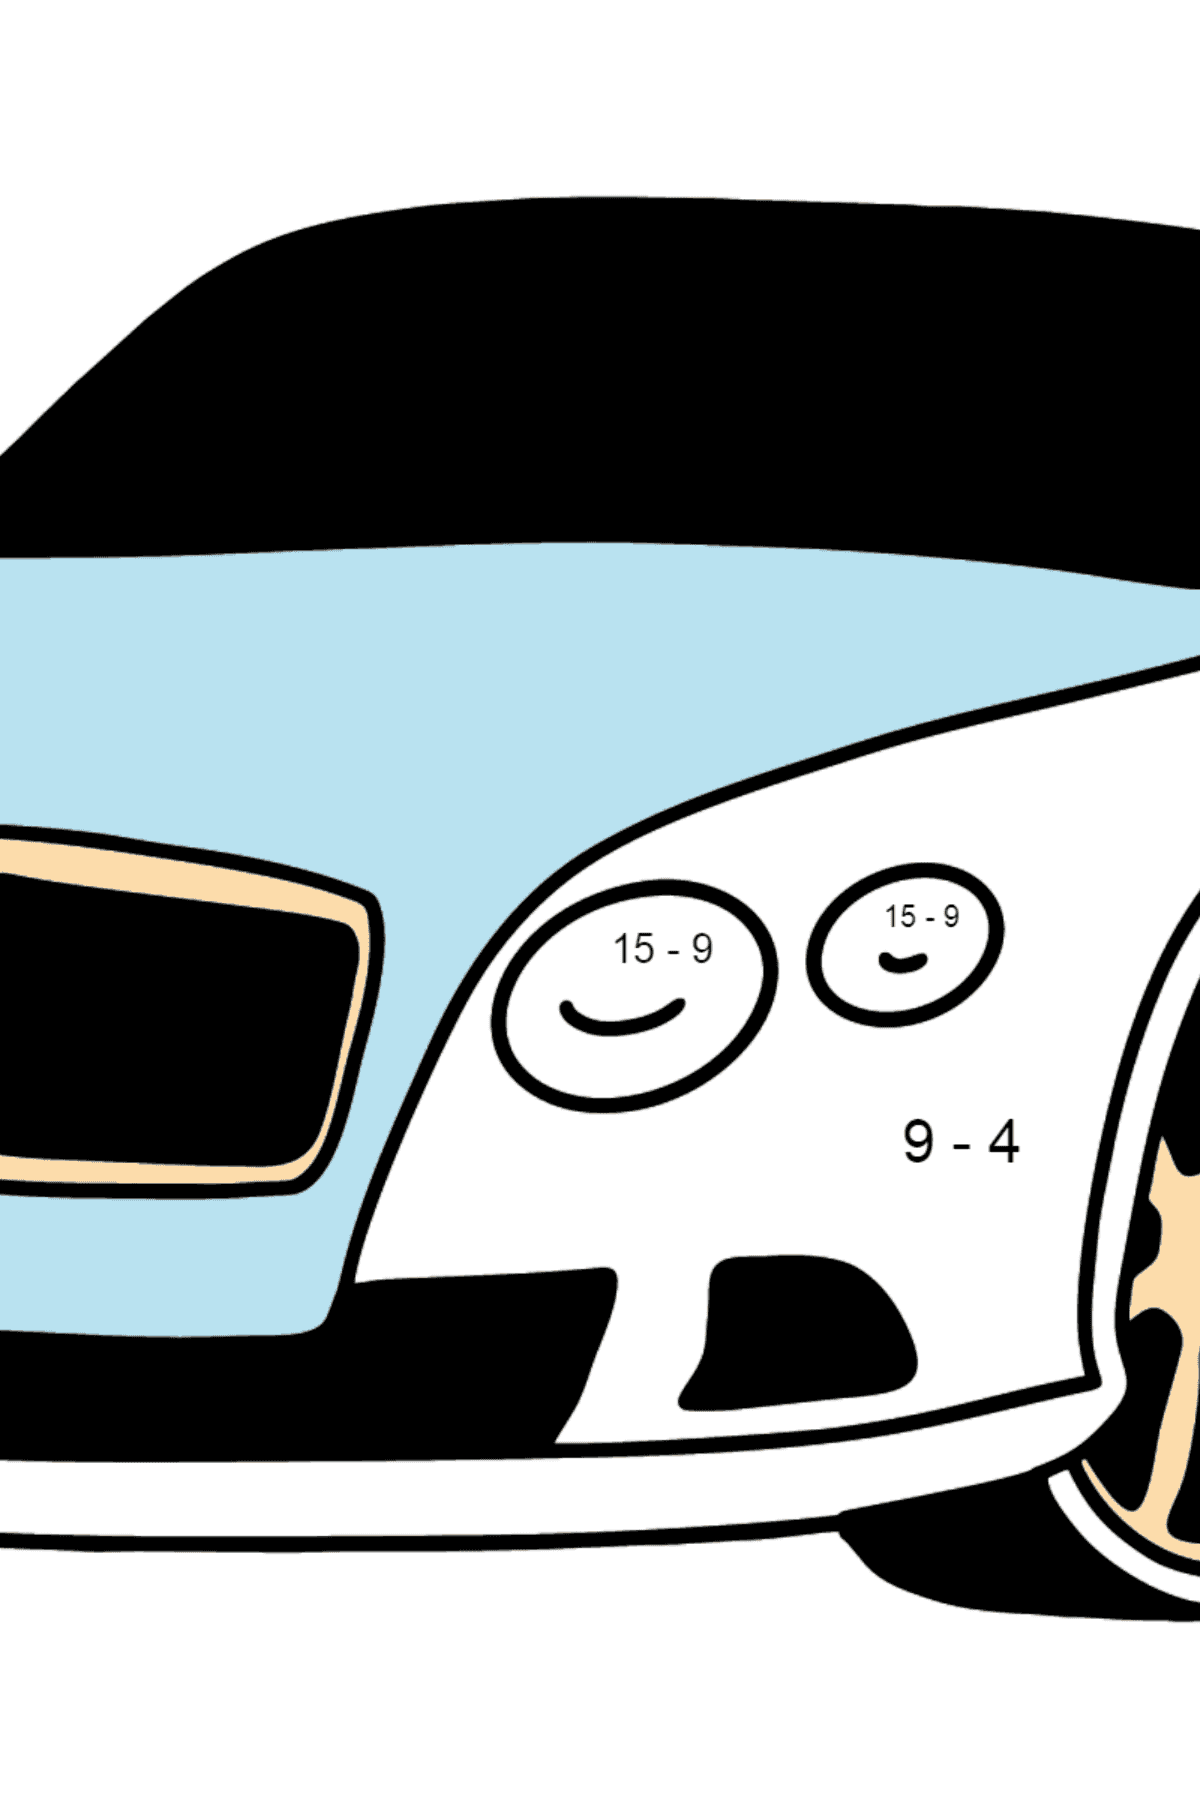 Desenhos para colorir do Bentley Continental GT Car - Colorindo com Matemática - Subtração para Crianças